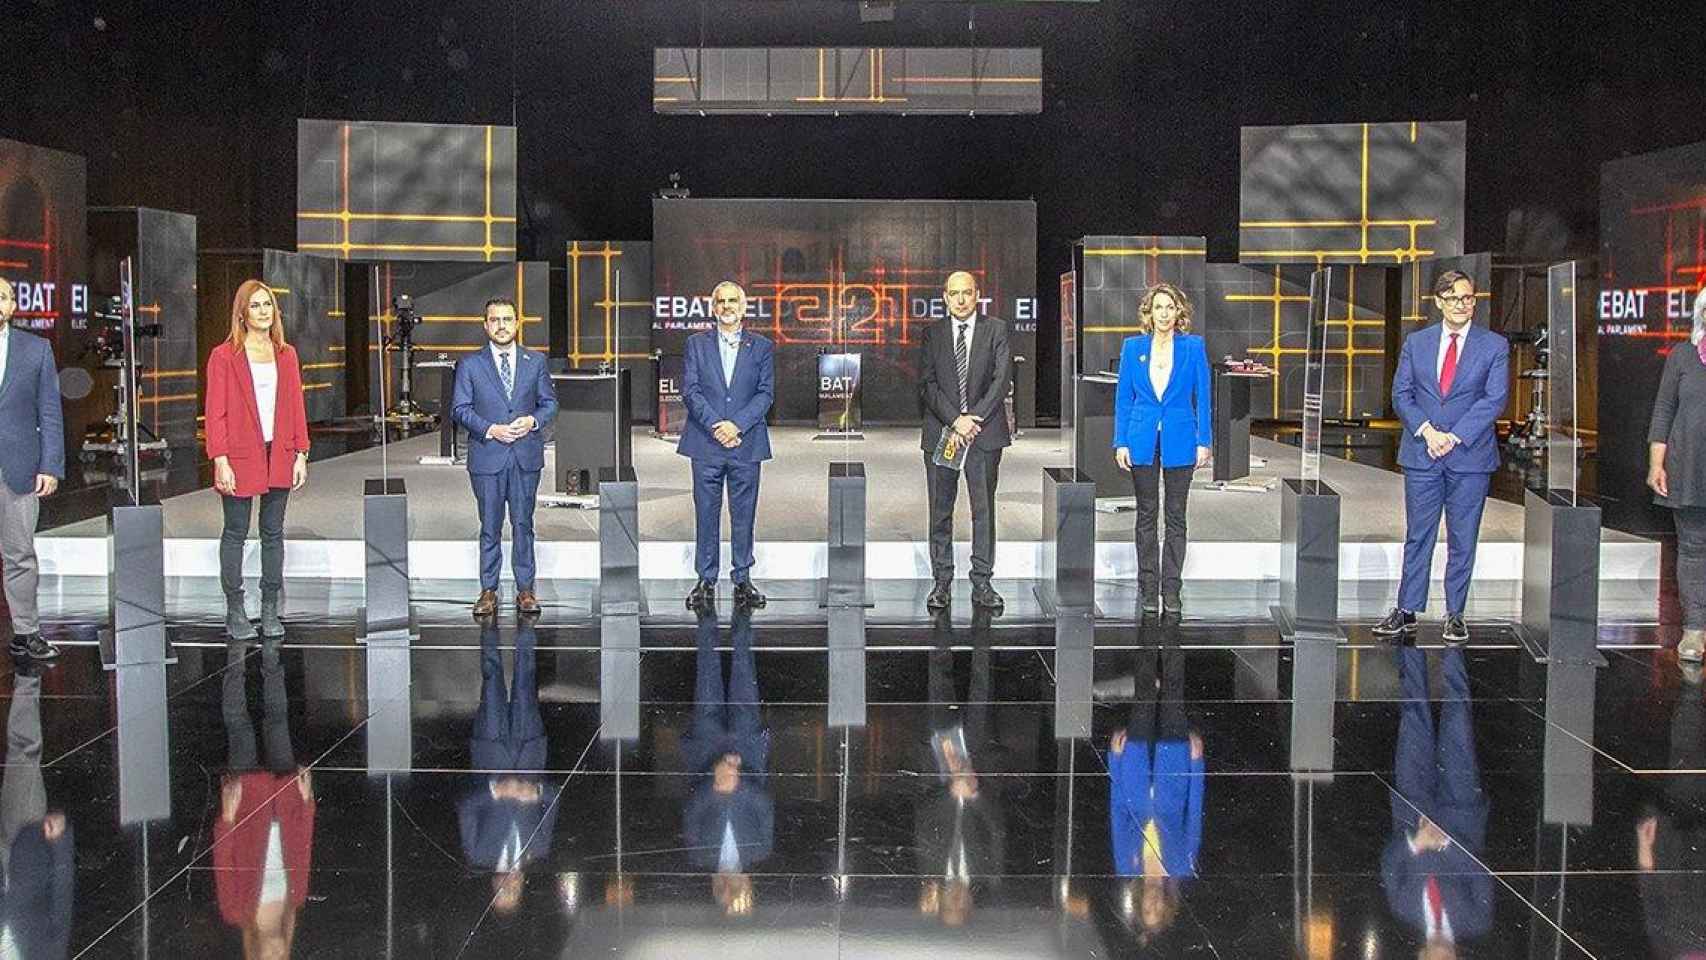 Imagen del debate electoral de TV3